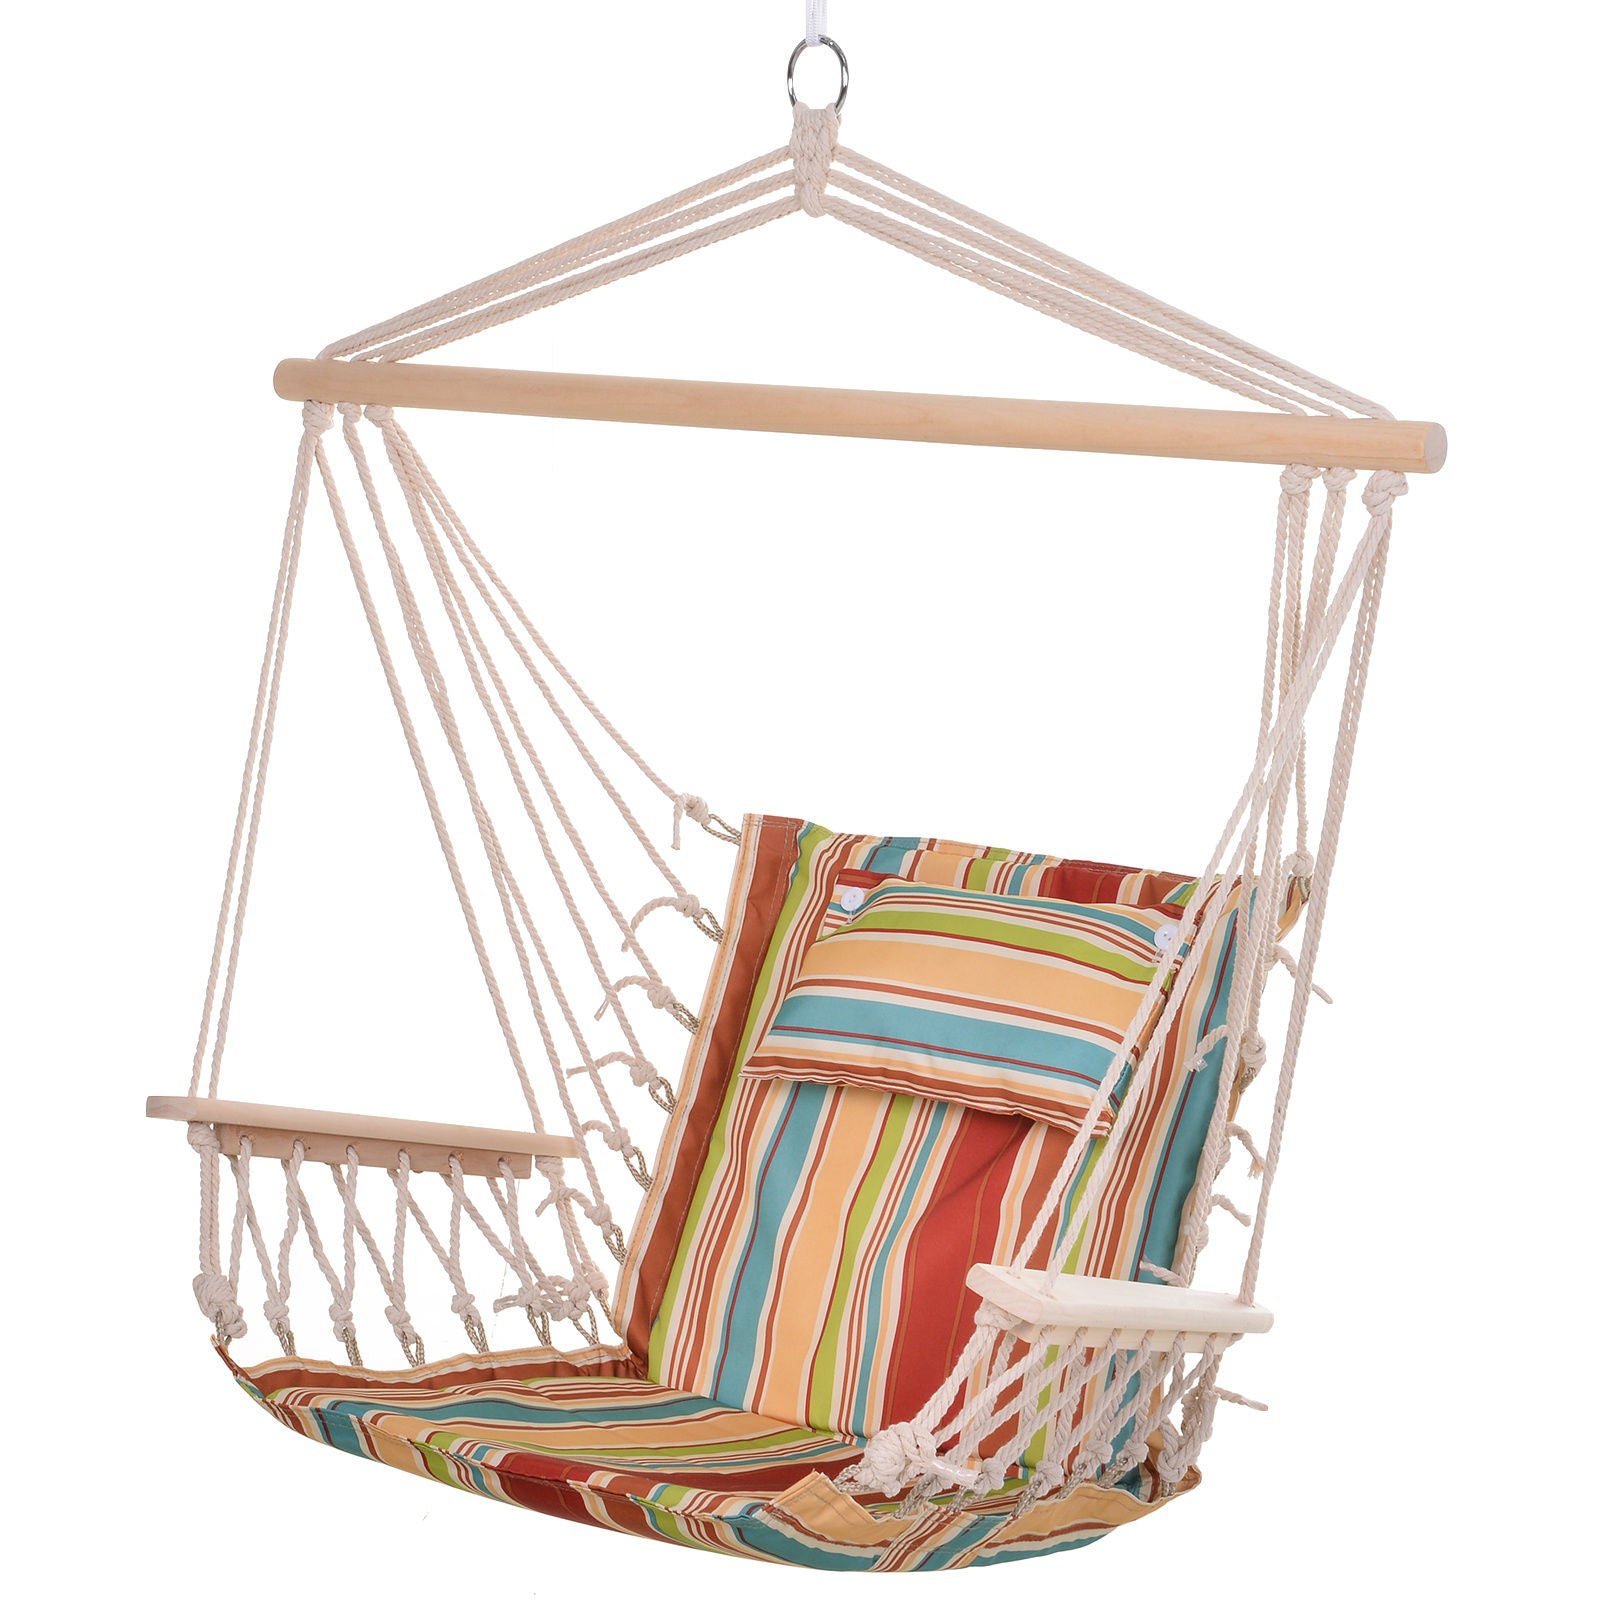 Chaise suspendue Alf Lake de Nancy avec coussin - Multicolore - Polyester